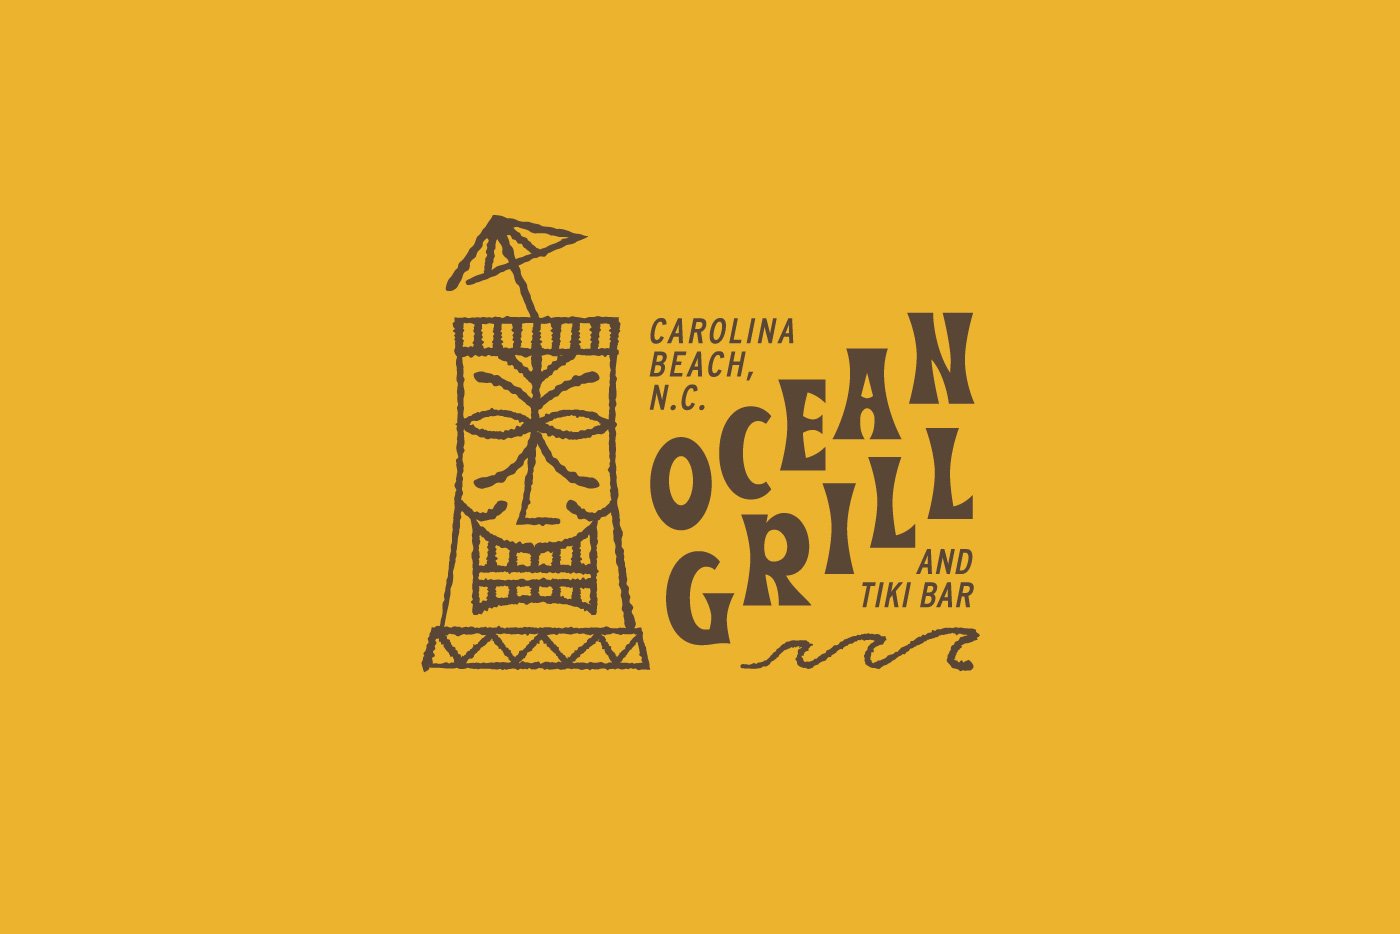 Ocean Grill Logo